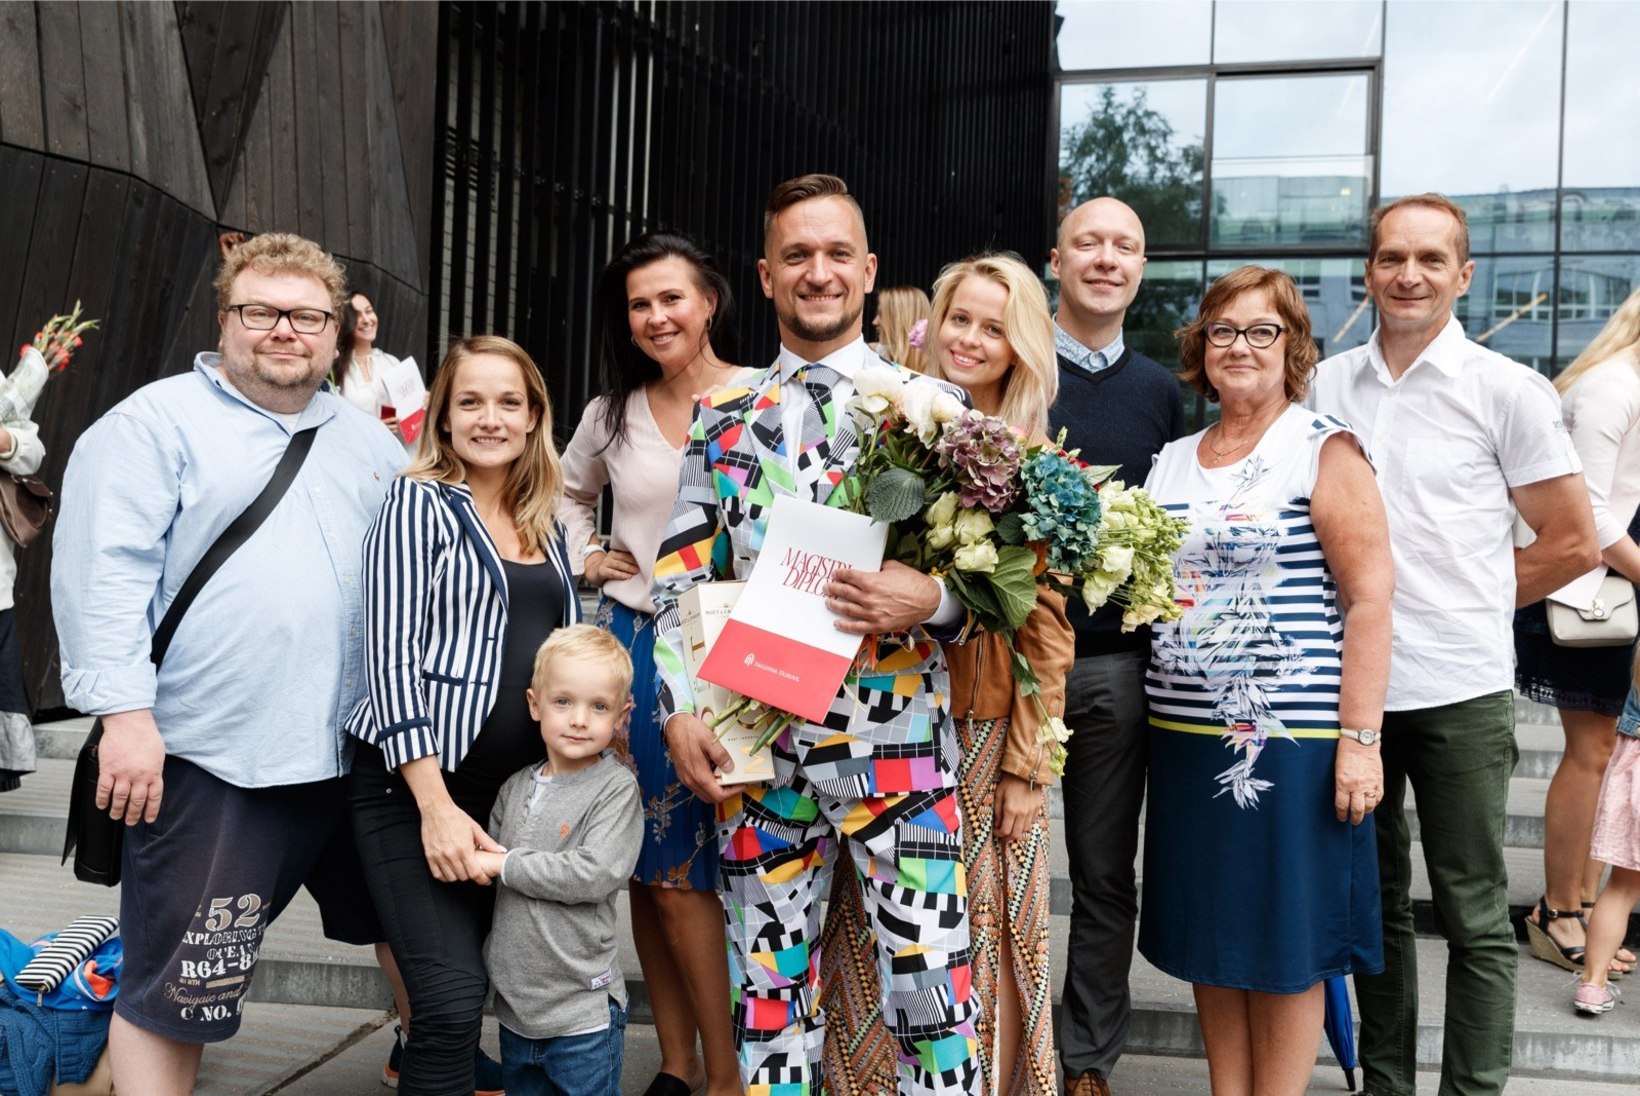 FOTOD | Vaata, kui kelmikas ülikonnas säras koolilõpetamisel „Eesti laulu“ produtsendiks kandideerinud Jarmo Seljamaa